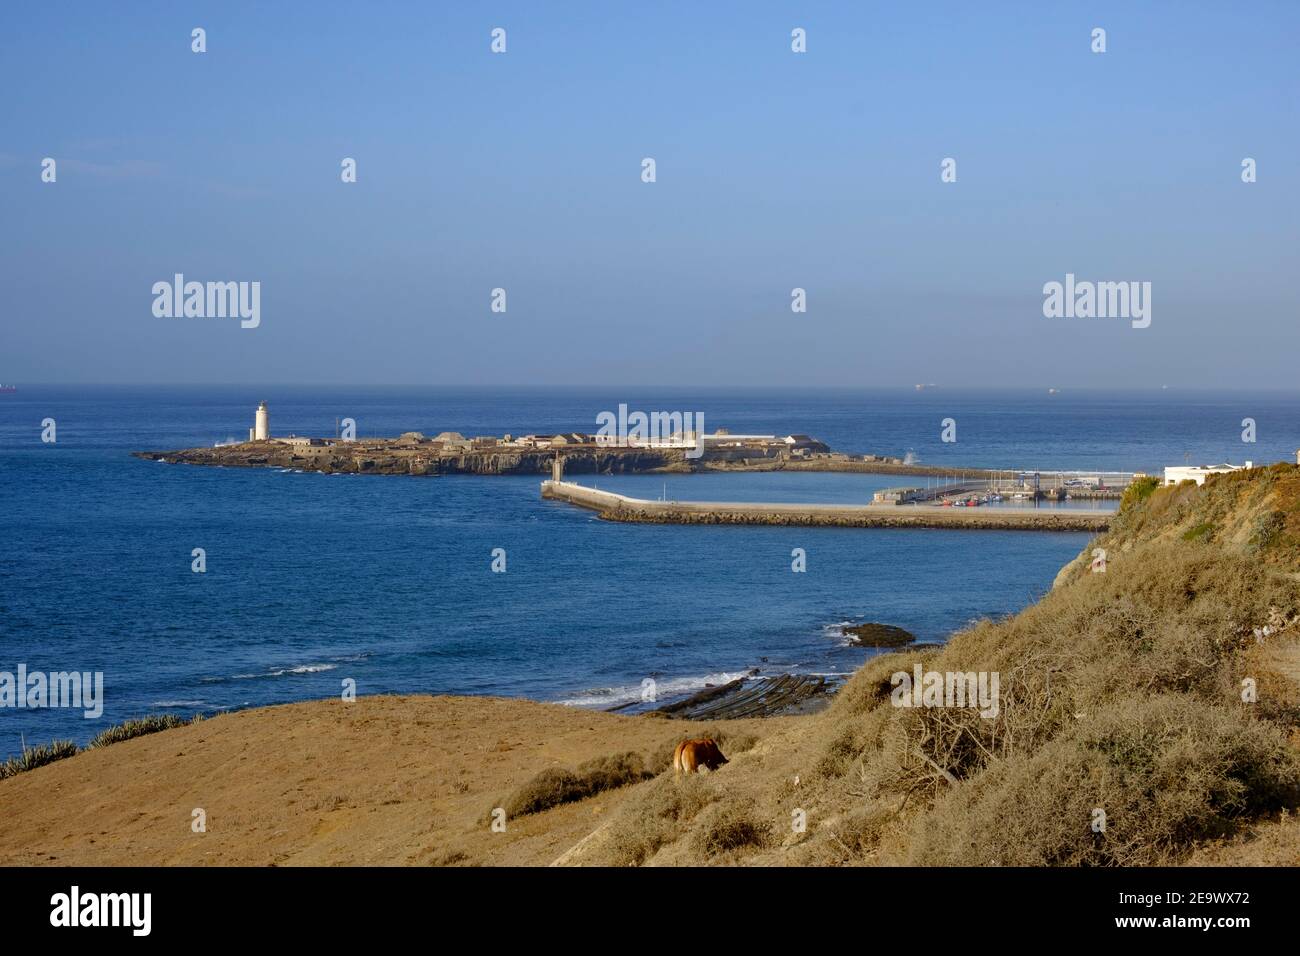 Vue sur le port de Tarifa depuis les falaises côtières au nord de la ville. Tarifa, province de Cadix, Andalousie, Espagne Banque D'Images